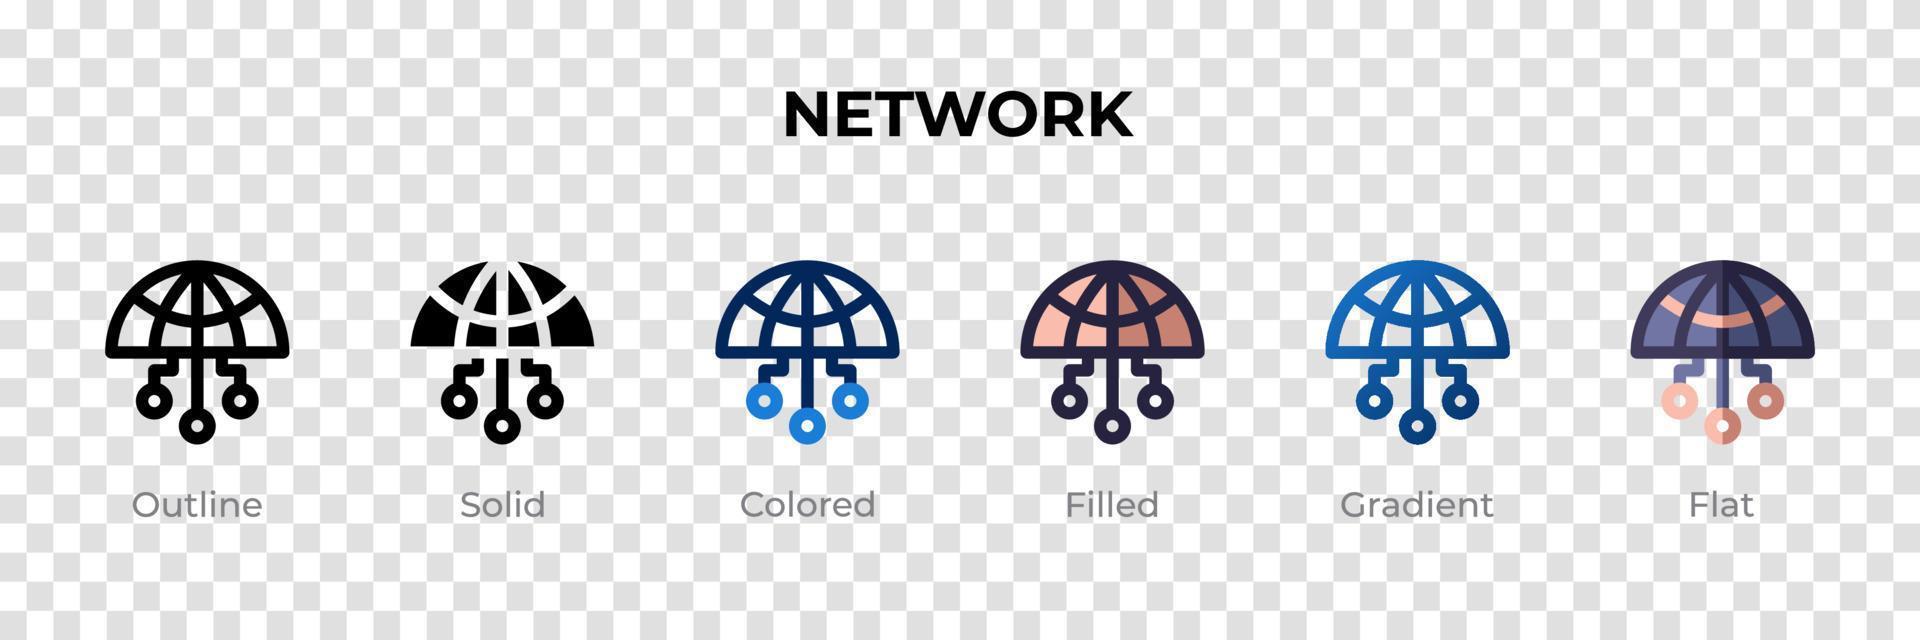 netwerkpictogram in verschillende stijl. netwerk vector iconen ontworpen in omtrek, effen, gekleurd, gevuld, verloop en vlakke stijl. symbool, logo afbeelding. vector illustratie